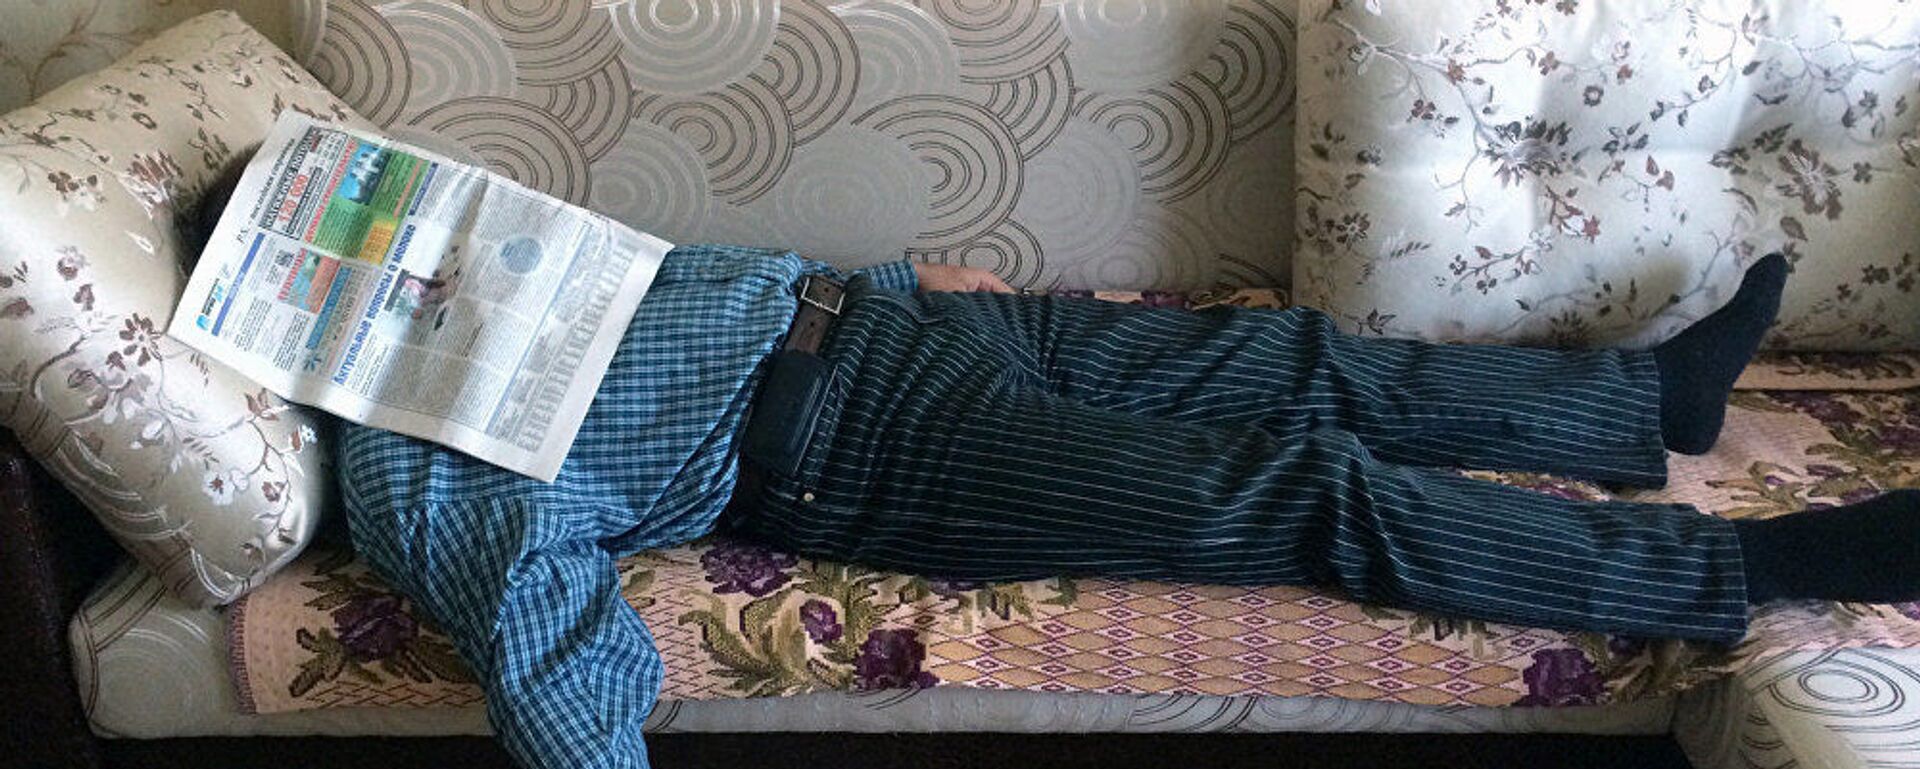 Мужчина отдыхает на диване - Sputnik Азербайджан, 1920, 05.12.2020